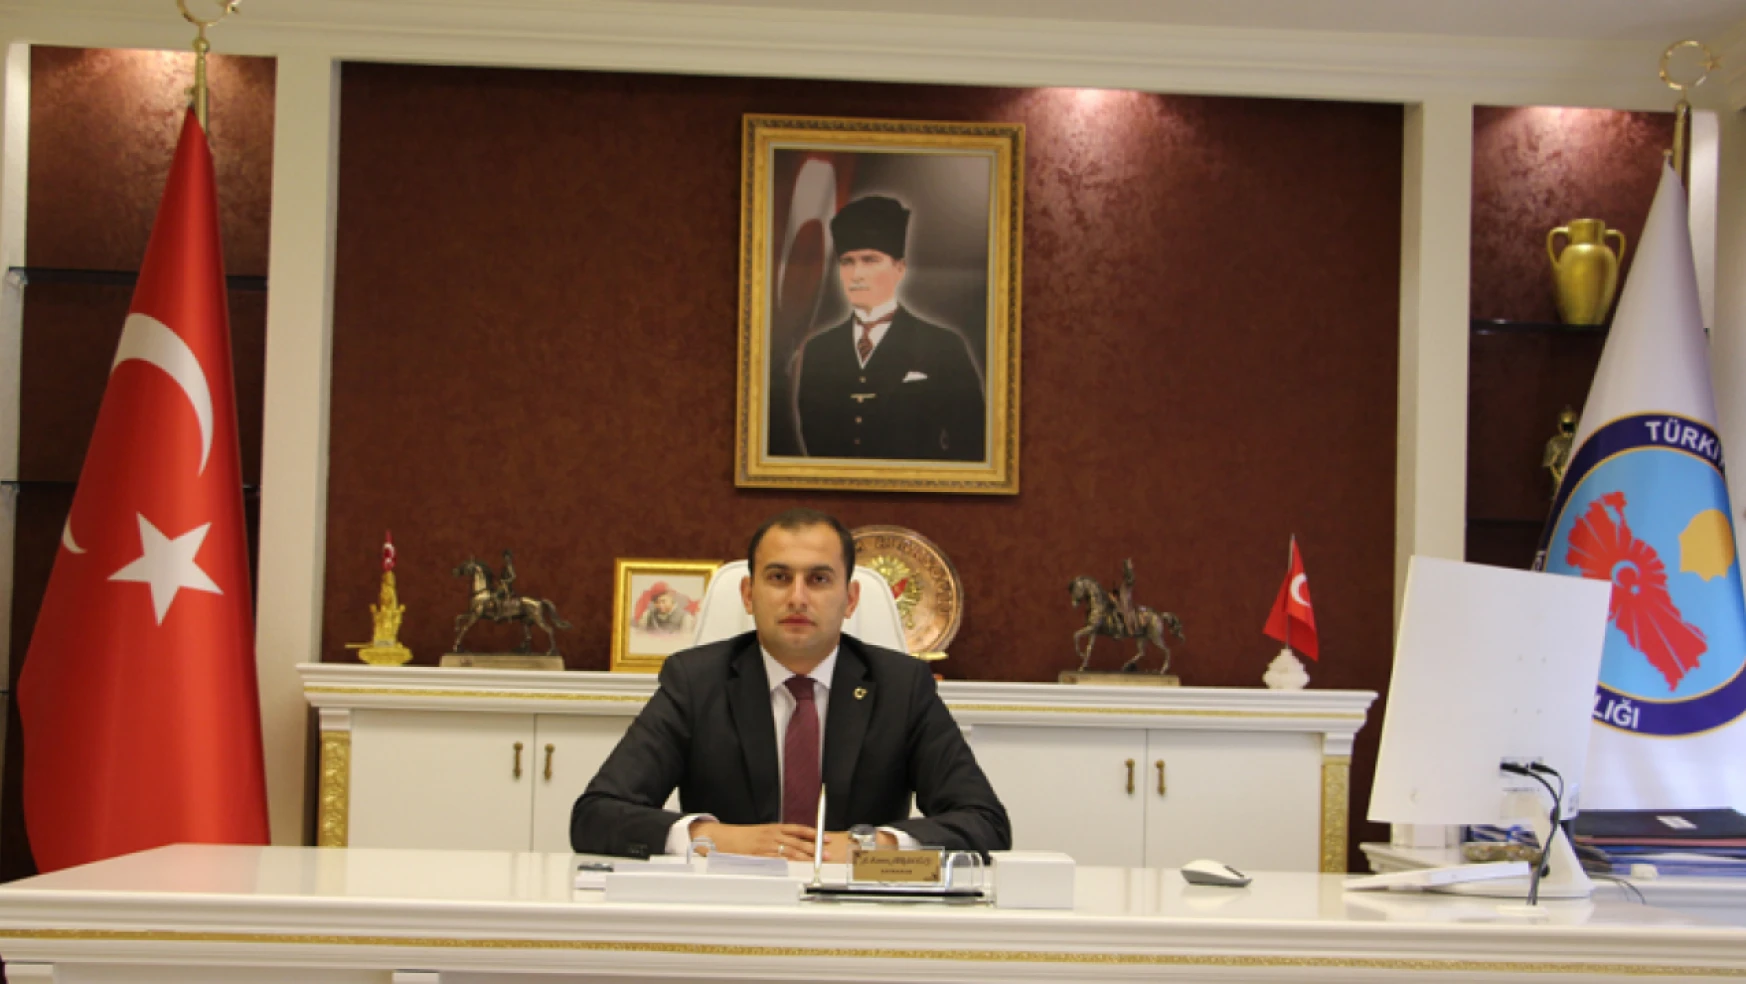 Abdulkerem Abbasoğlu, İçişleri Bakanlığı vilayetler birliği genel sekreterliği'ne atandı